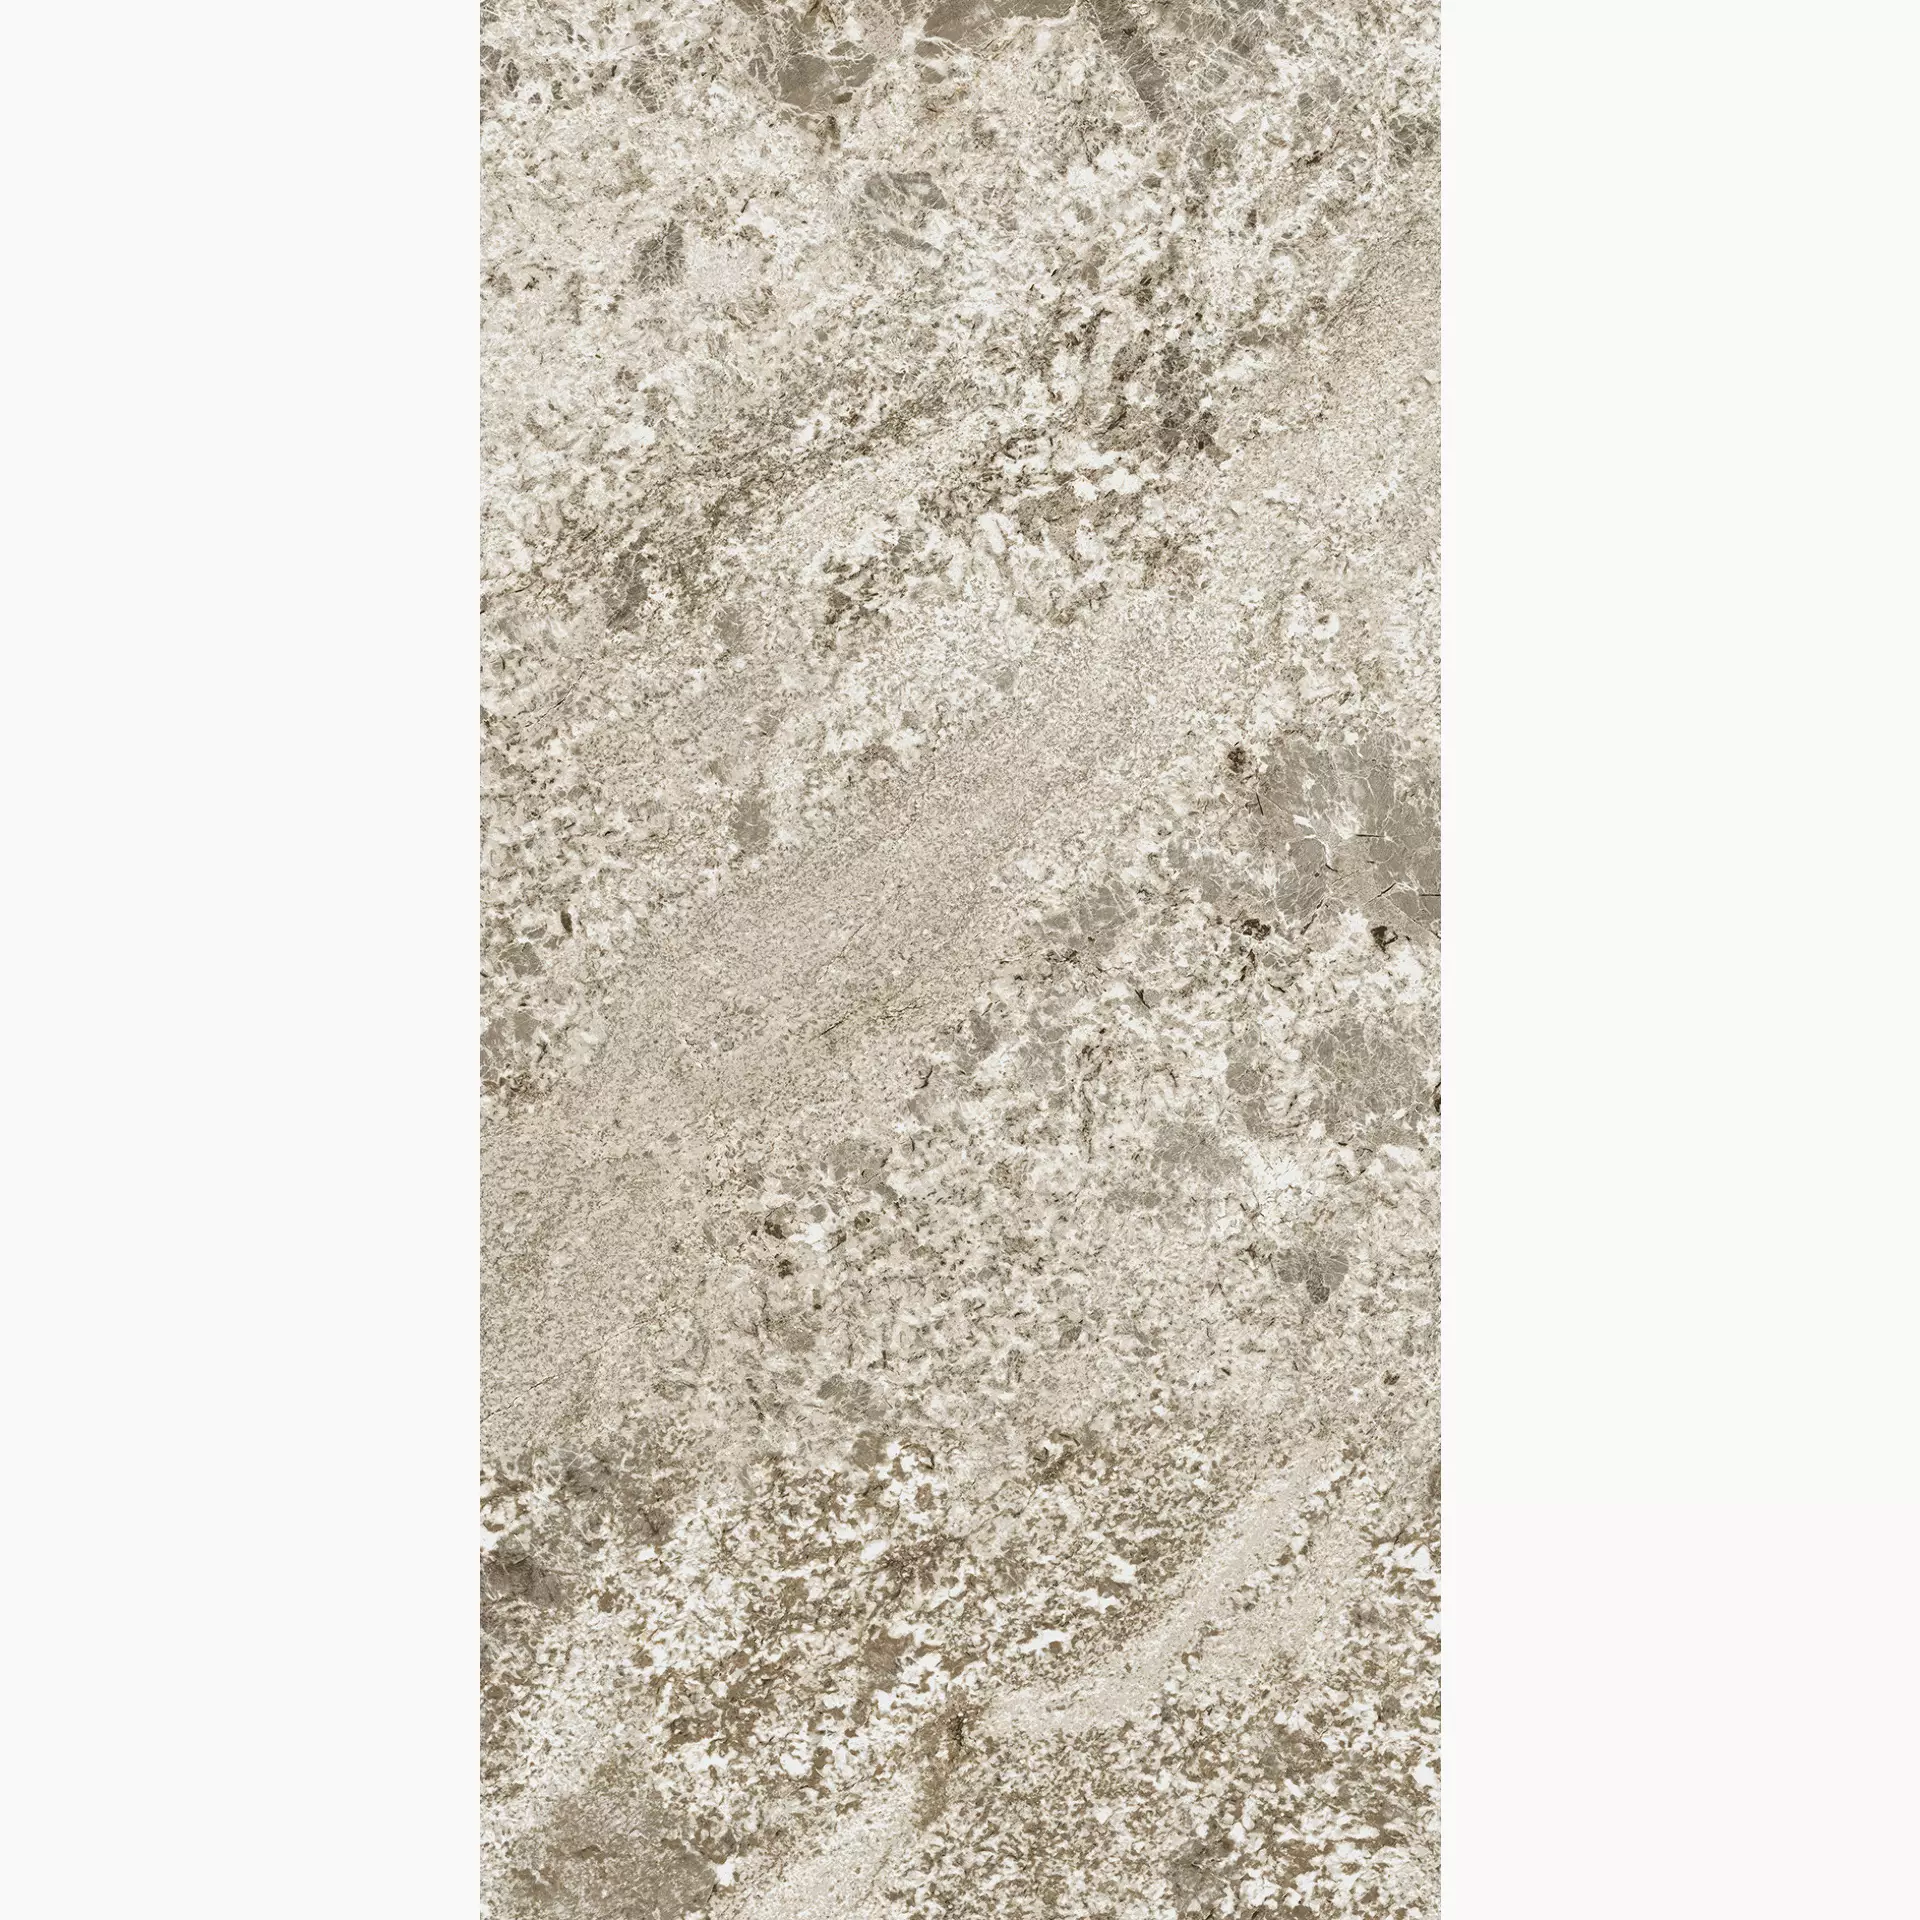 Florim Plimatech Plimabeige 03 Naturale – Matt Plimabeige 03 776582 matt natur 60x120cm rektifiziert 6mm